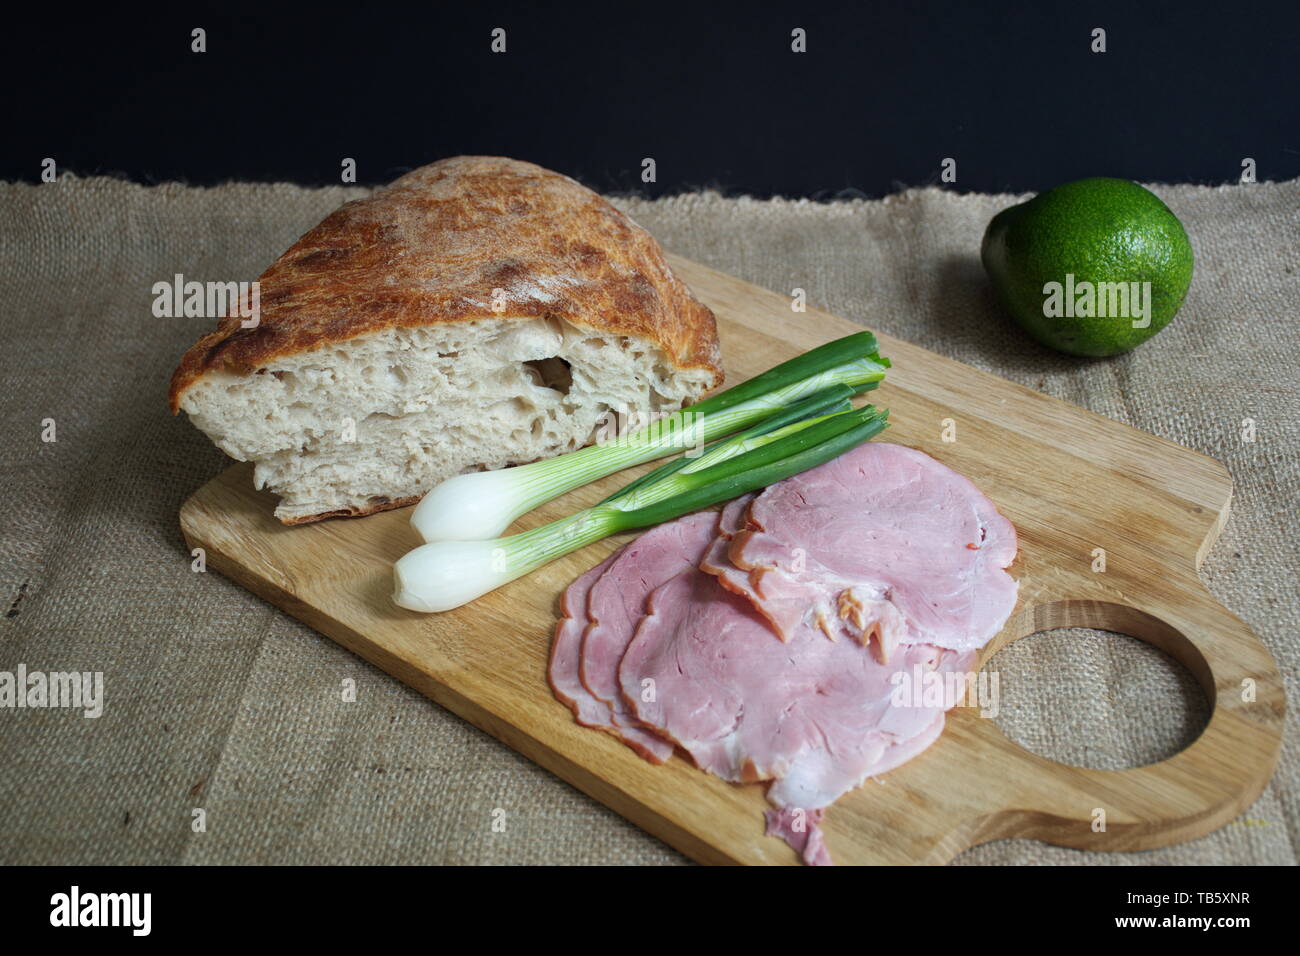 Elevato angolo di visione del pane, prosciutto cotto, cipolla e di avocado sul bordo di taglio Foto Stock